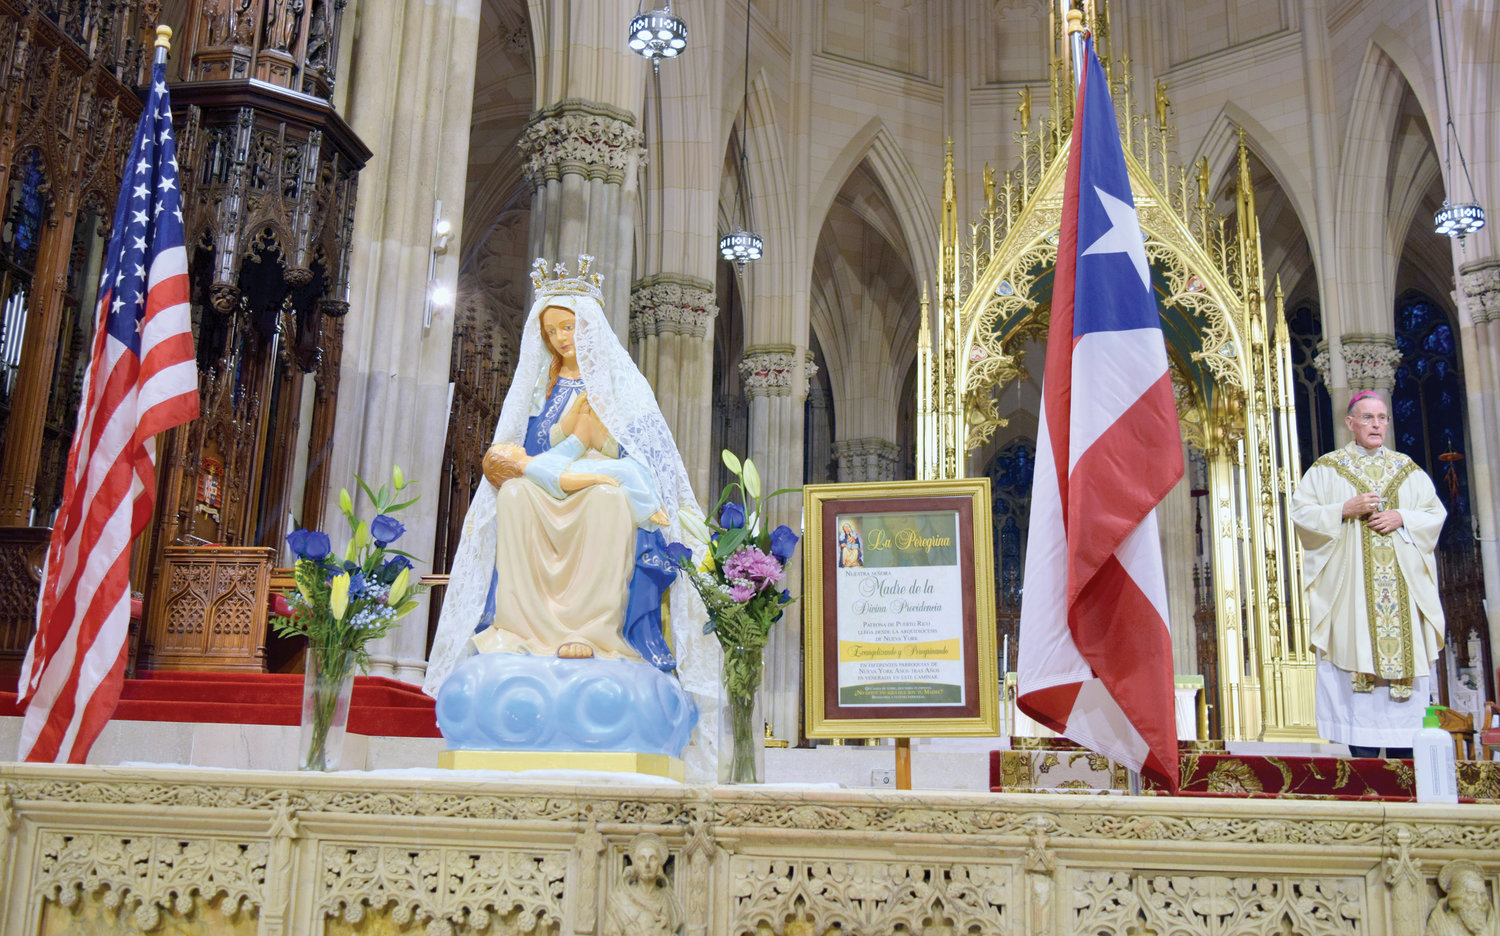 FE Y PROVIDENCIA—Dentro de la Catedral de San Patricio, una estatua de Nuestra Señora de la Providencia es presentada el 14 de noviembre durante la misa anual en honor de la patrona de Puerto Rico. El obispo auxiliar jubilado Gerald T. Walsh, a la derecha, sirvió como celebrante principal. Fue la 41ª misa anual de Nuestra Señora de la Providencia en la catedral.